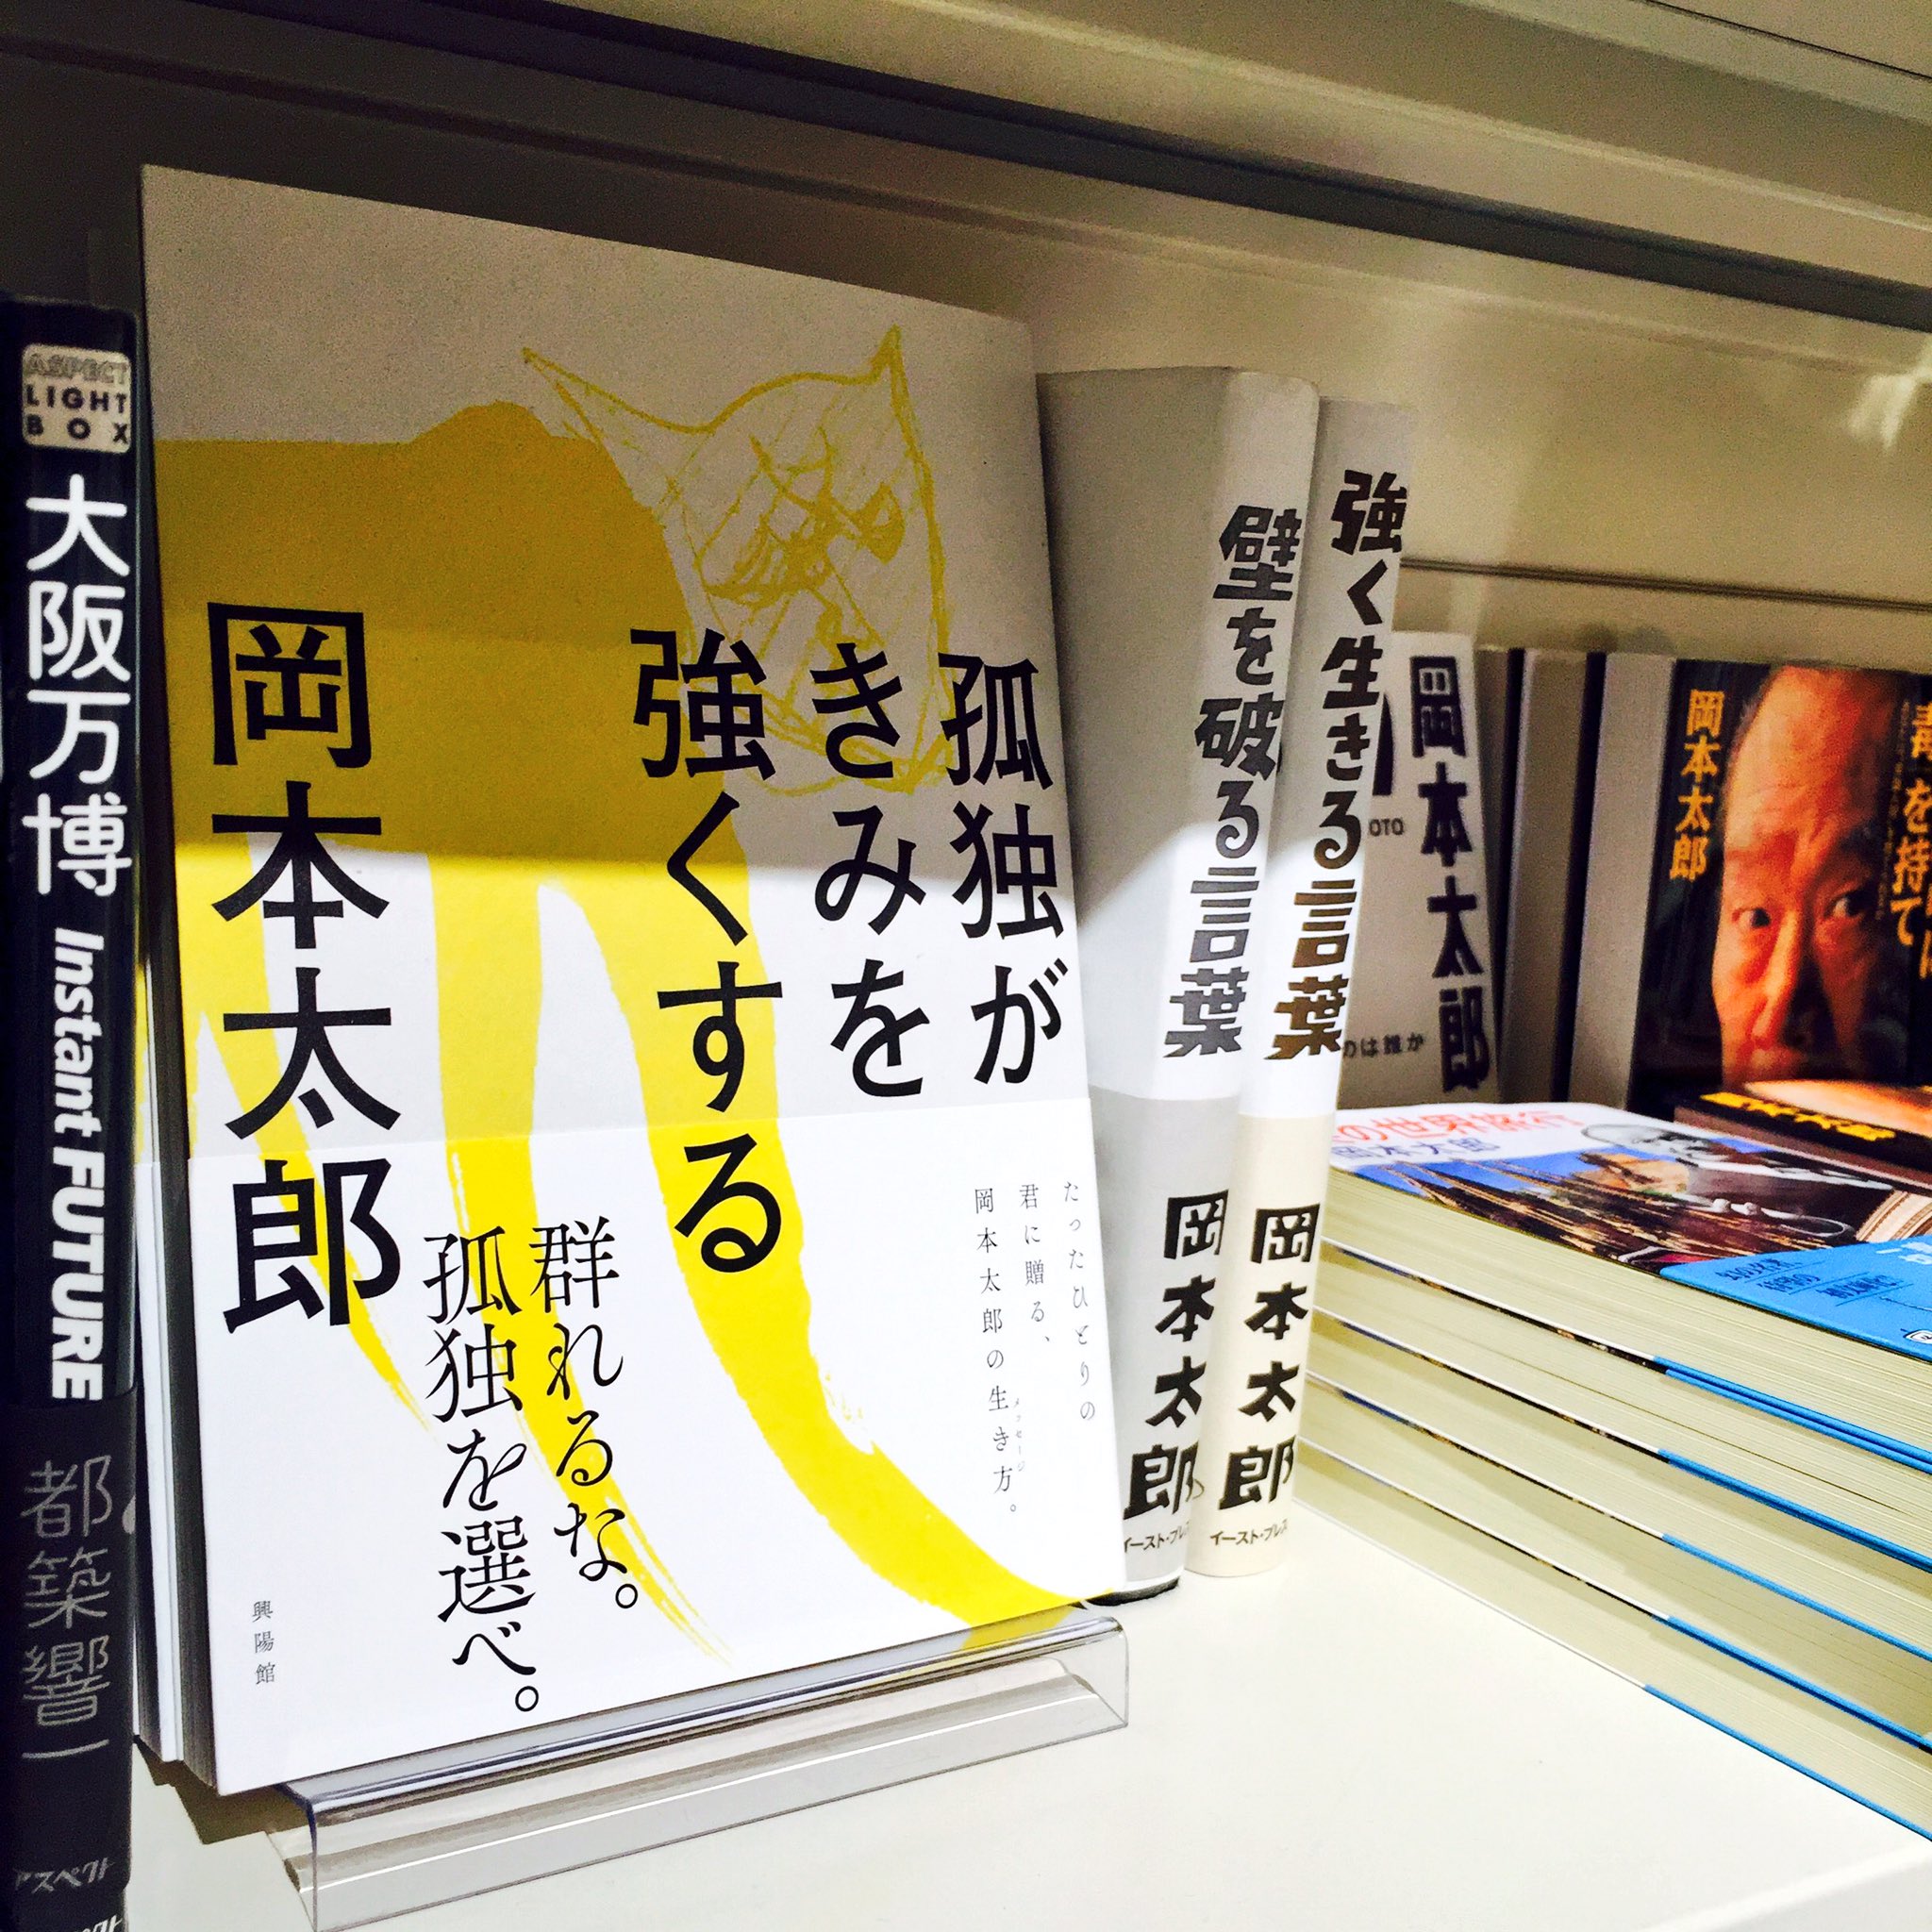 Hmv Books Shibuya Twitterissa ６階art 群れるな 孤独を選べ 孤独はただの寂しさじゃない 孤独こそ人間が強烈に 生きるバネだ 岡本太郎 孤独がきみを強くする 入荷しています 強く胸に突き刺さるメッセージを是非お手に取りください この本を片手に強く前